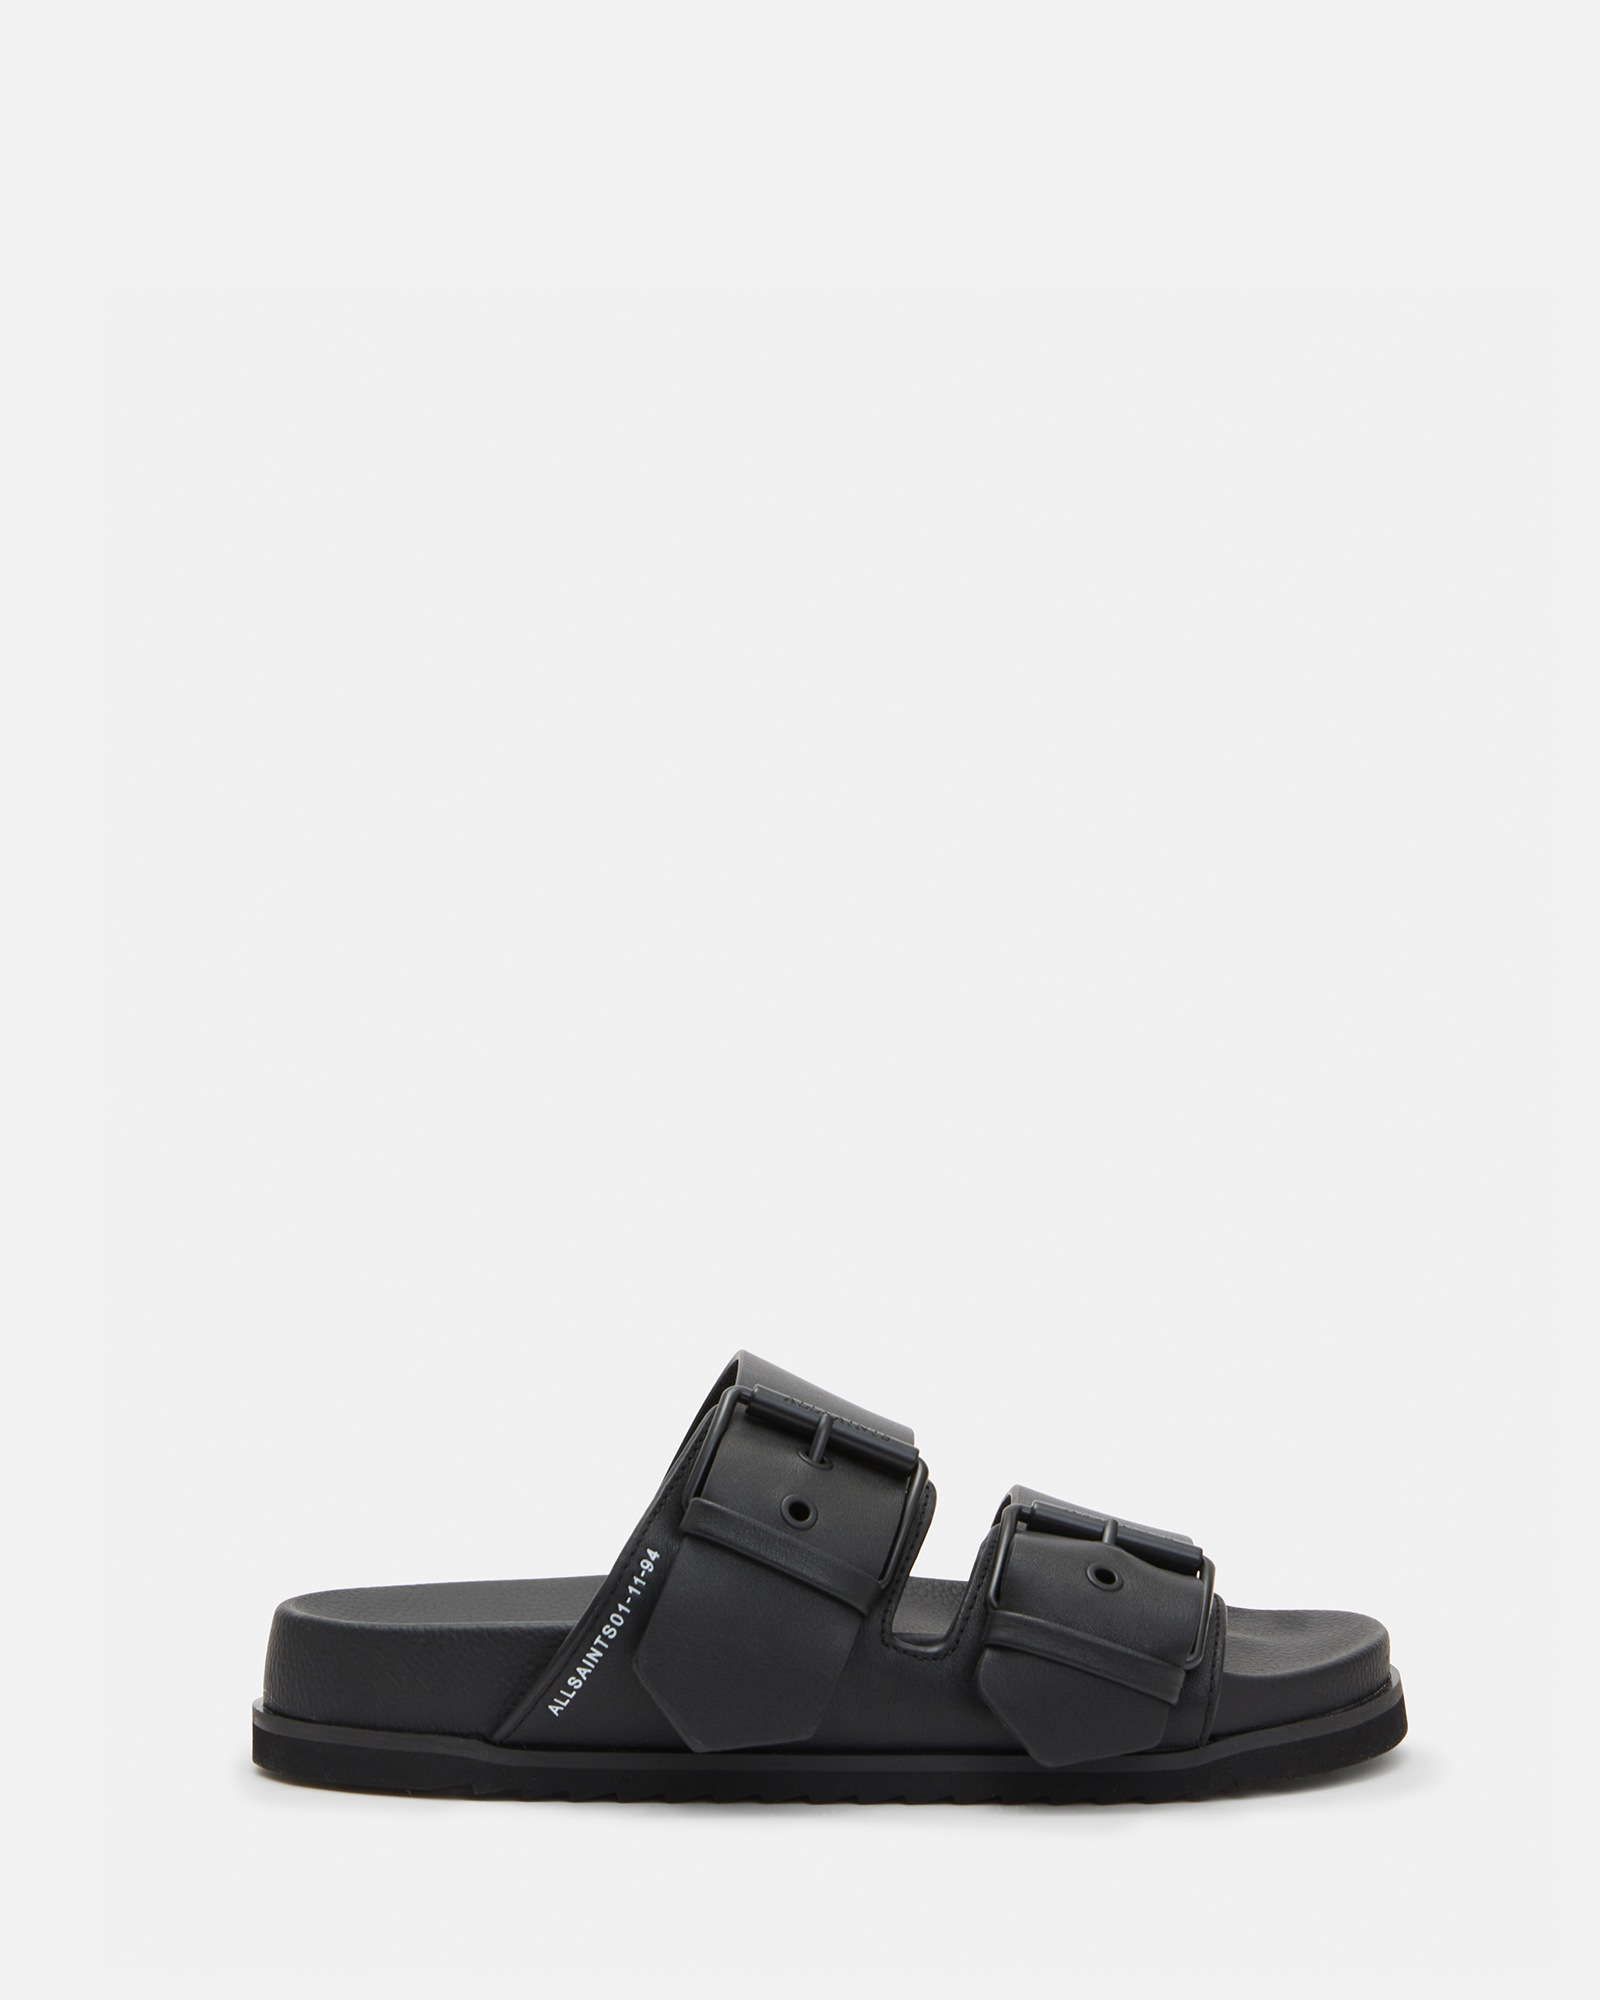 AllSaints Sian Leather Sandals,, Black